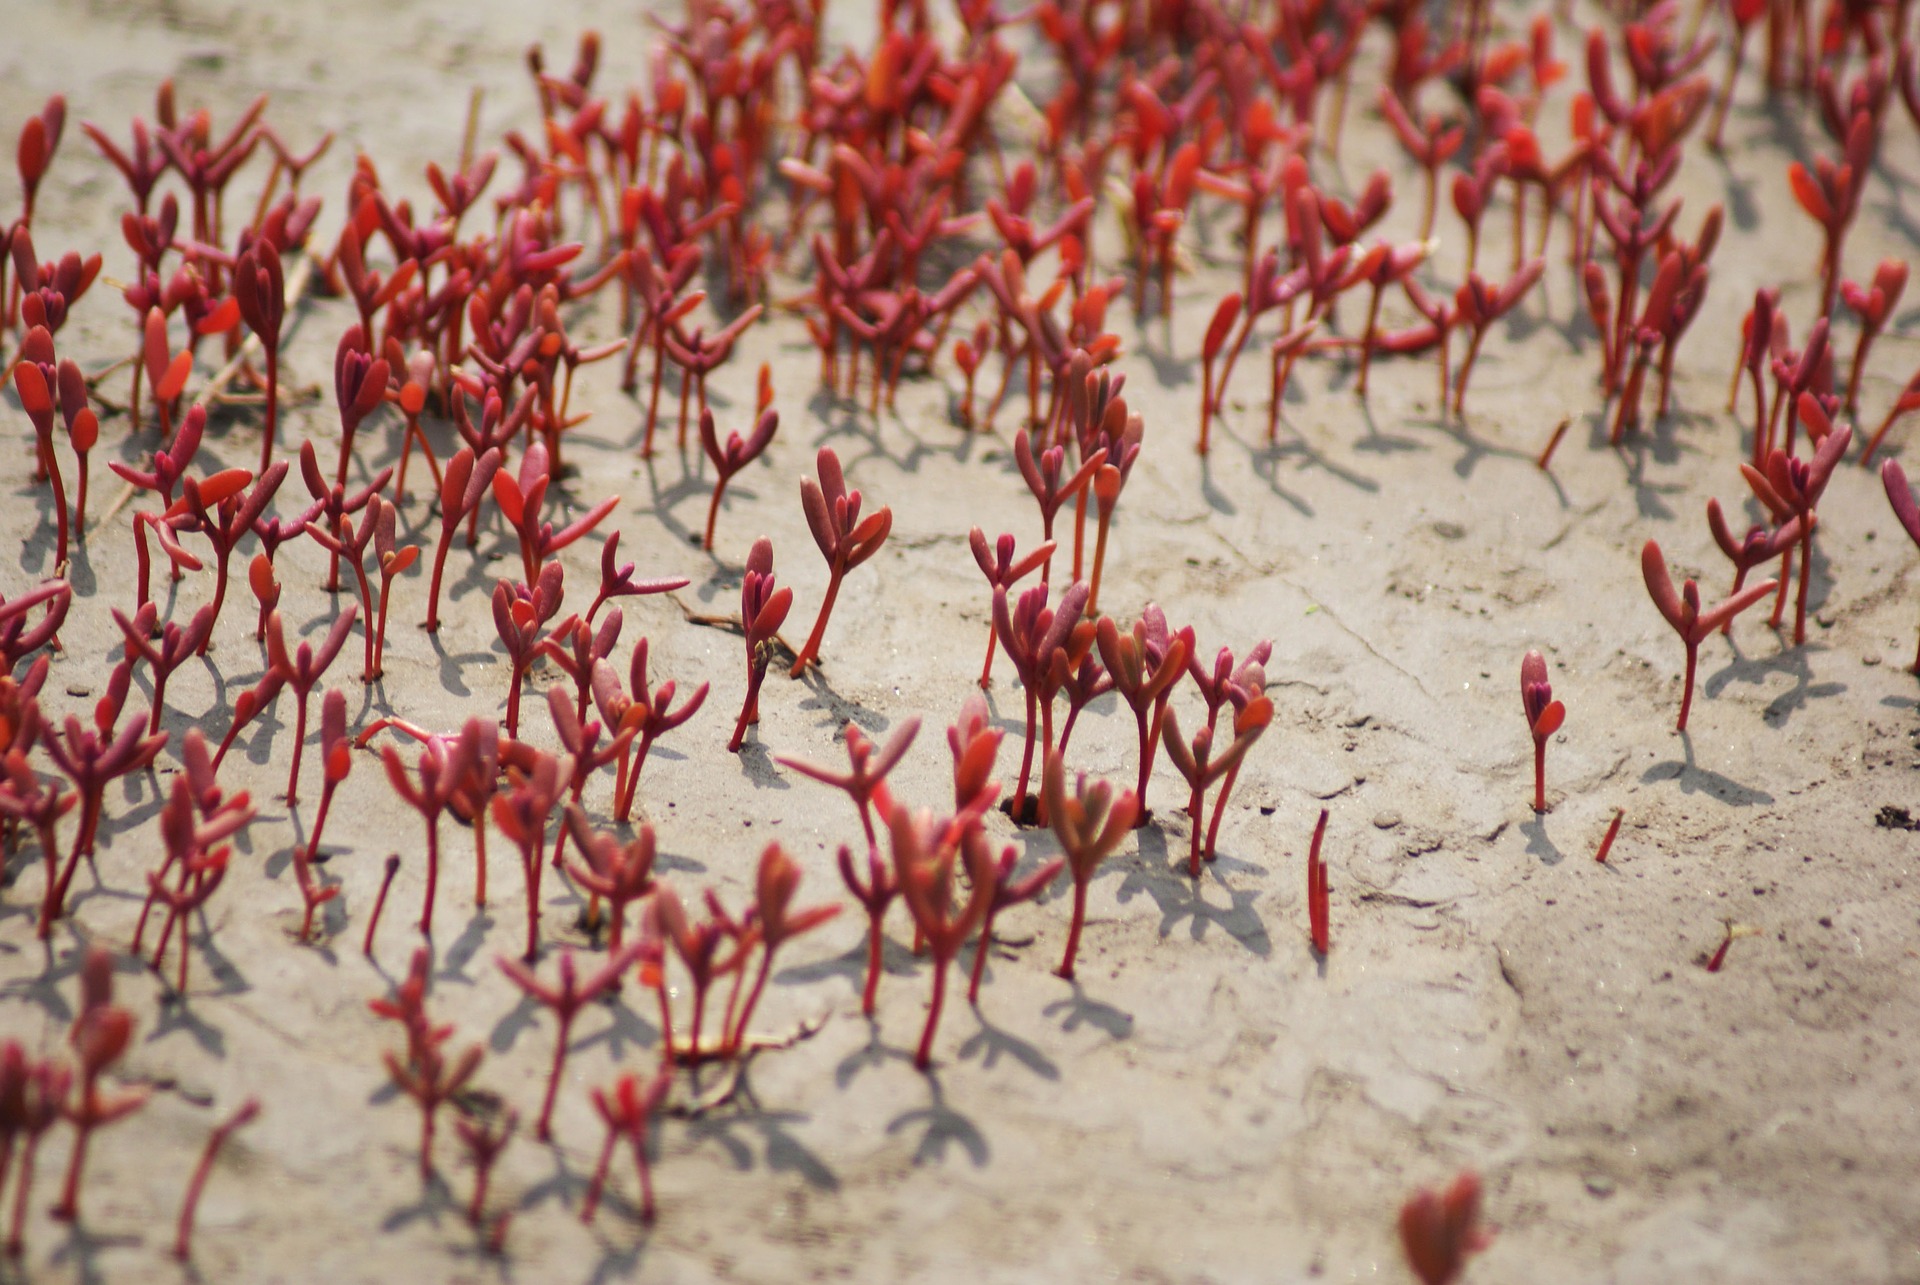 World View: Червеният плаж в Панджин, Китай